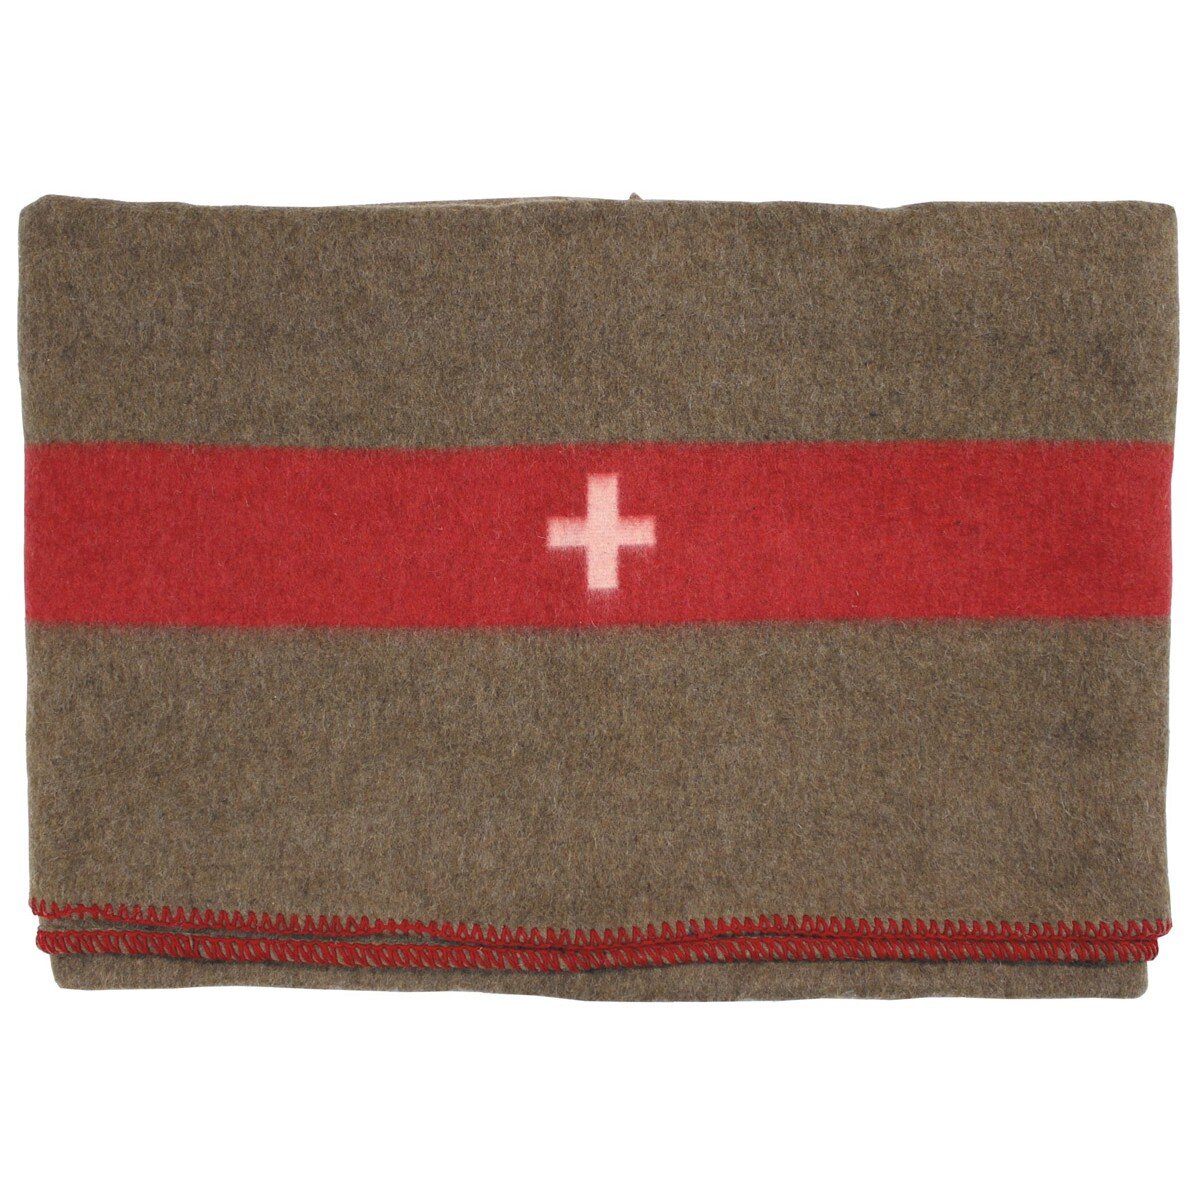 Suisse. Couverture en laine, marron, env. 200 x 150 cm